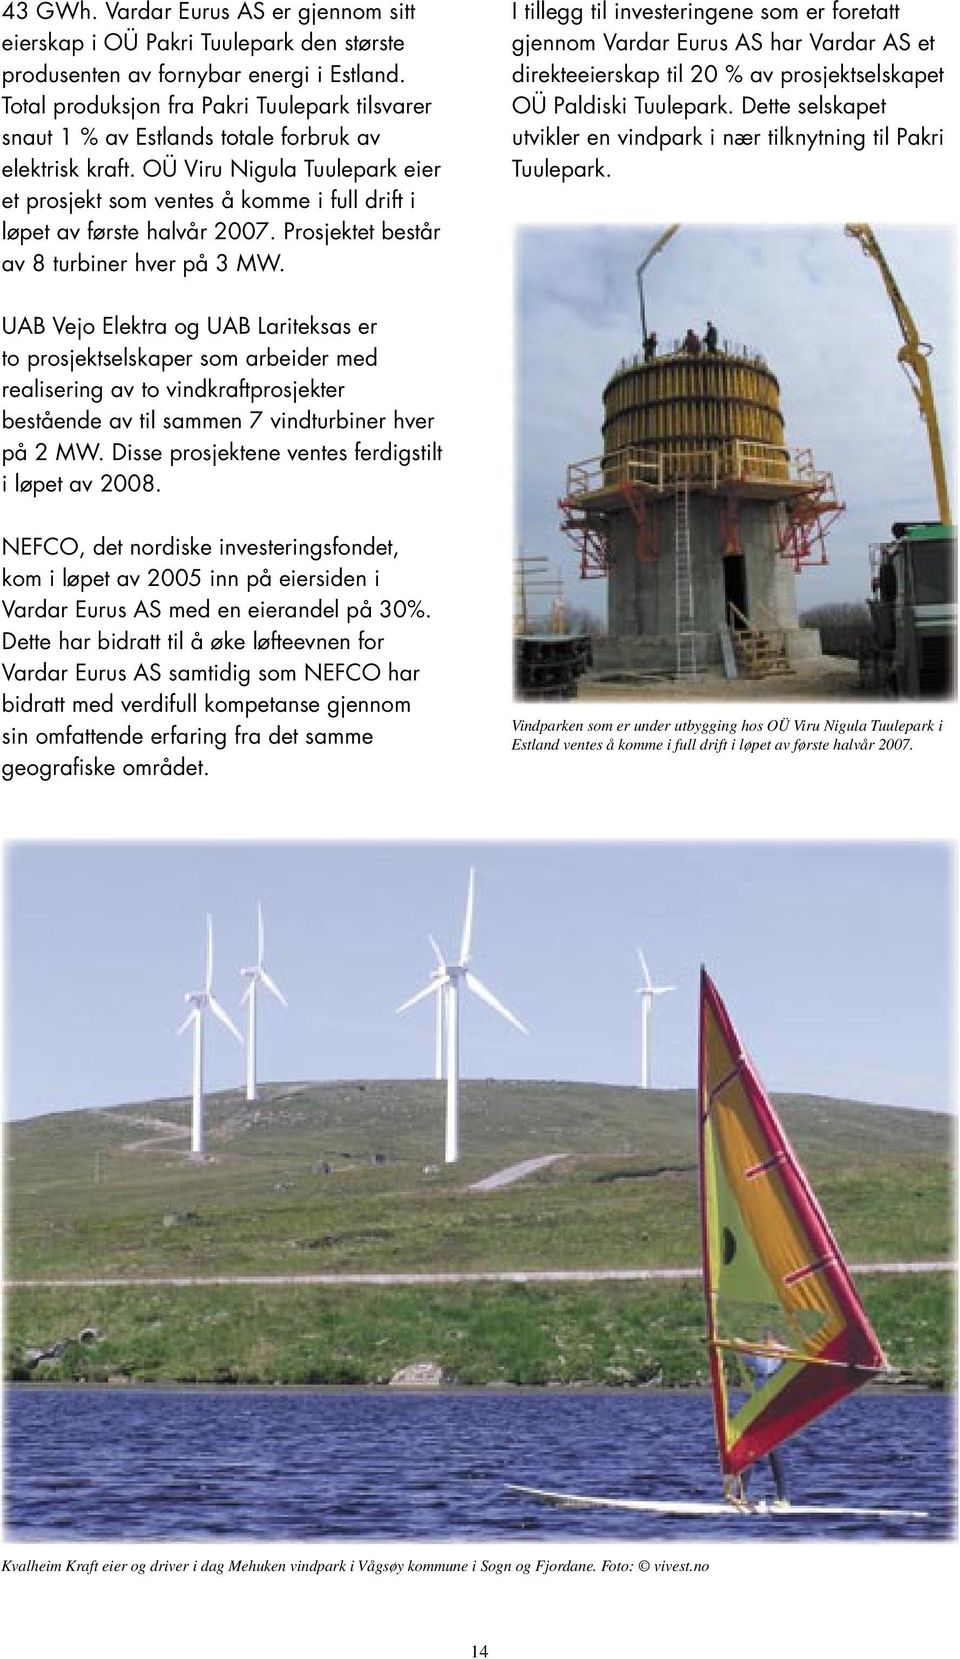 OÜ Viru Nigula Tuulepark eier et prosjekt som ventes å komme i full drift i løpet av første halvår 2007. Prosjektet består av 8 turbiner hver på 3 MW.